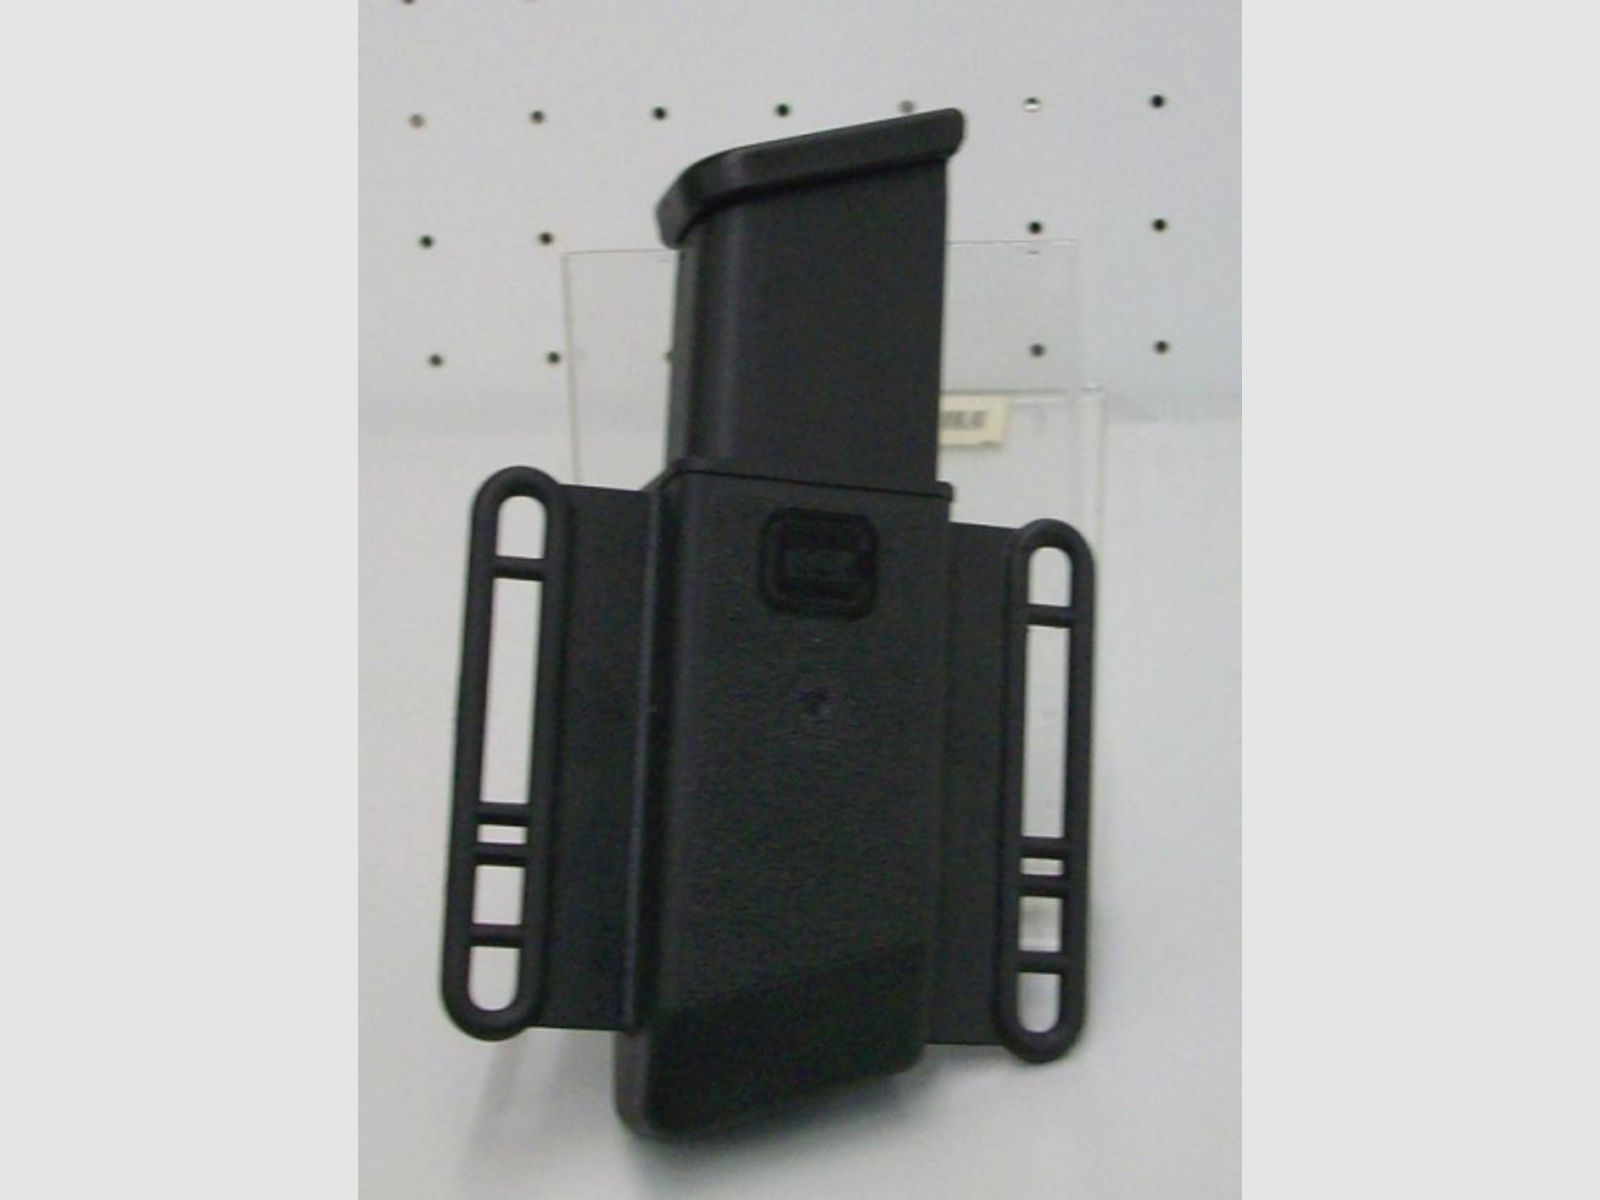 Magazintasche original Glock für Kaliber .45 ACP